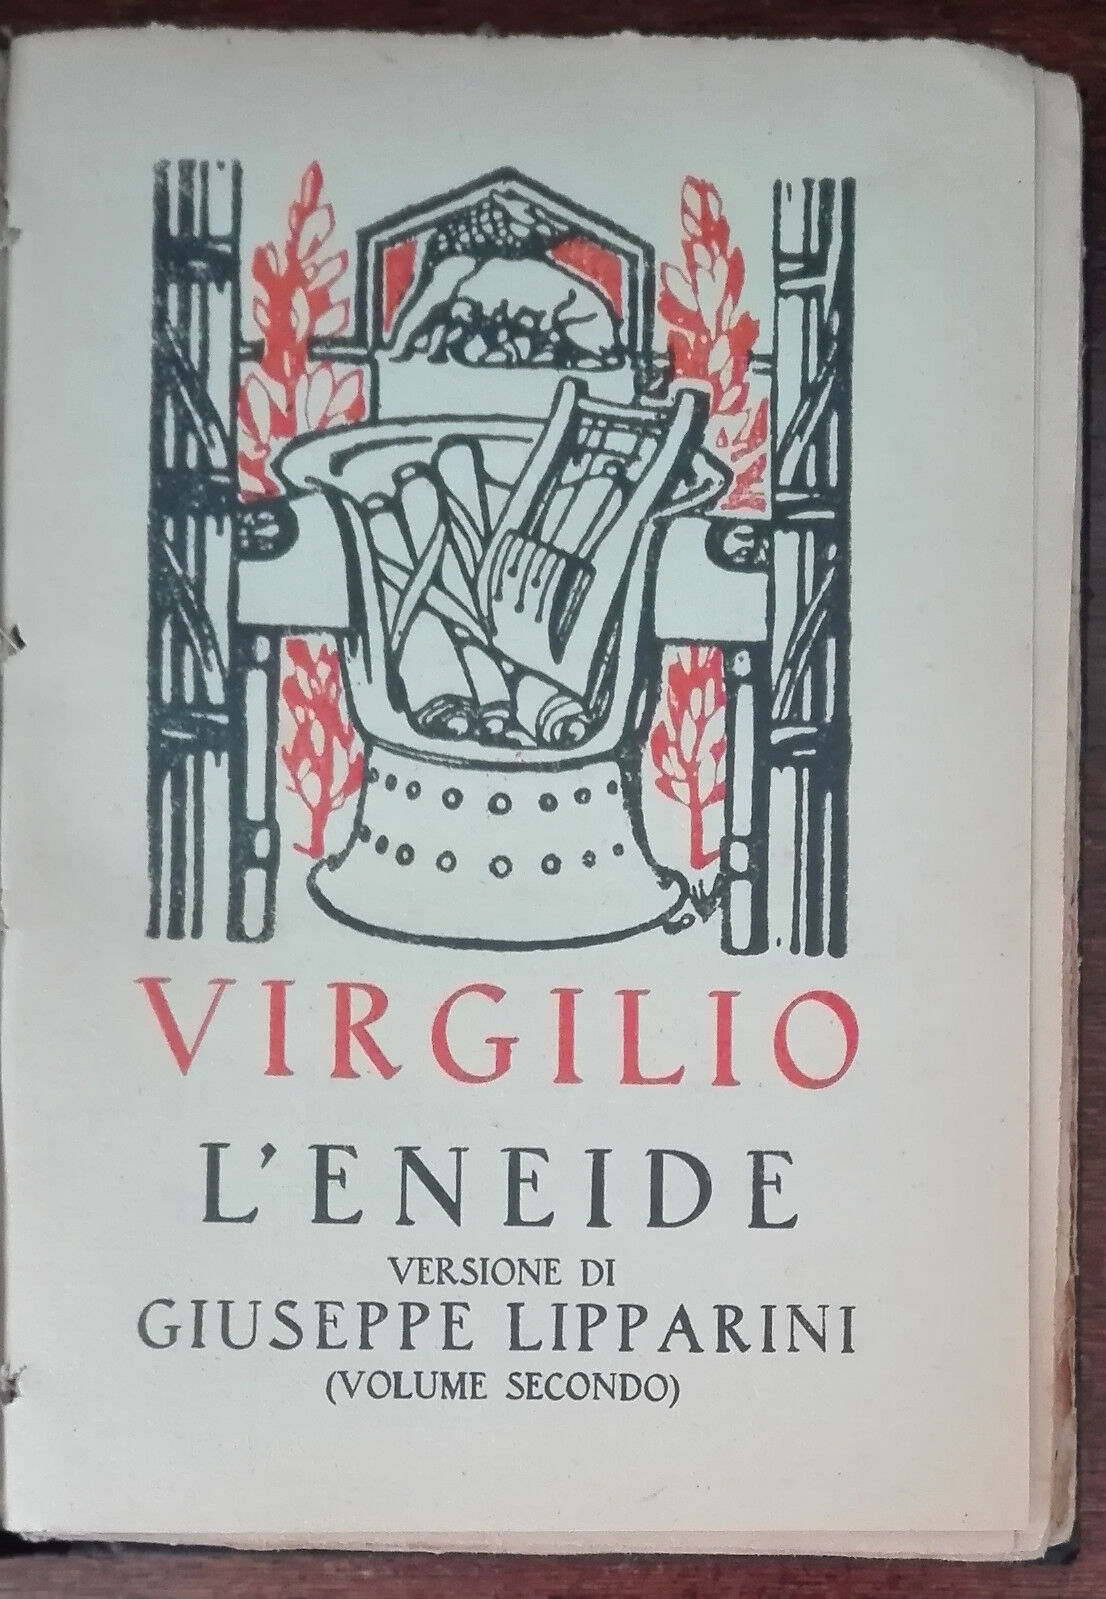 L'Eneide vol. II - Virgilio - S.A. Notari, 1930 - A